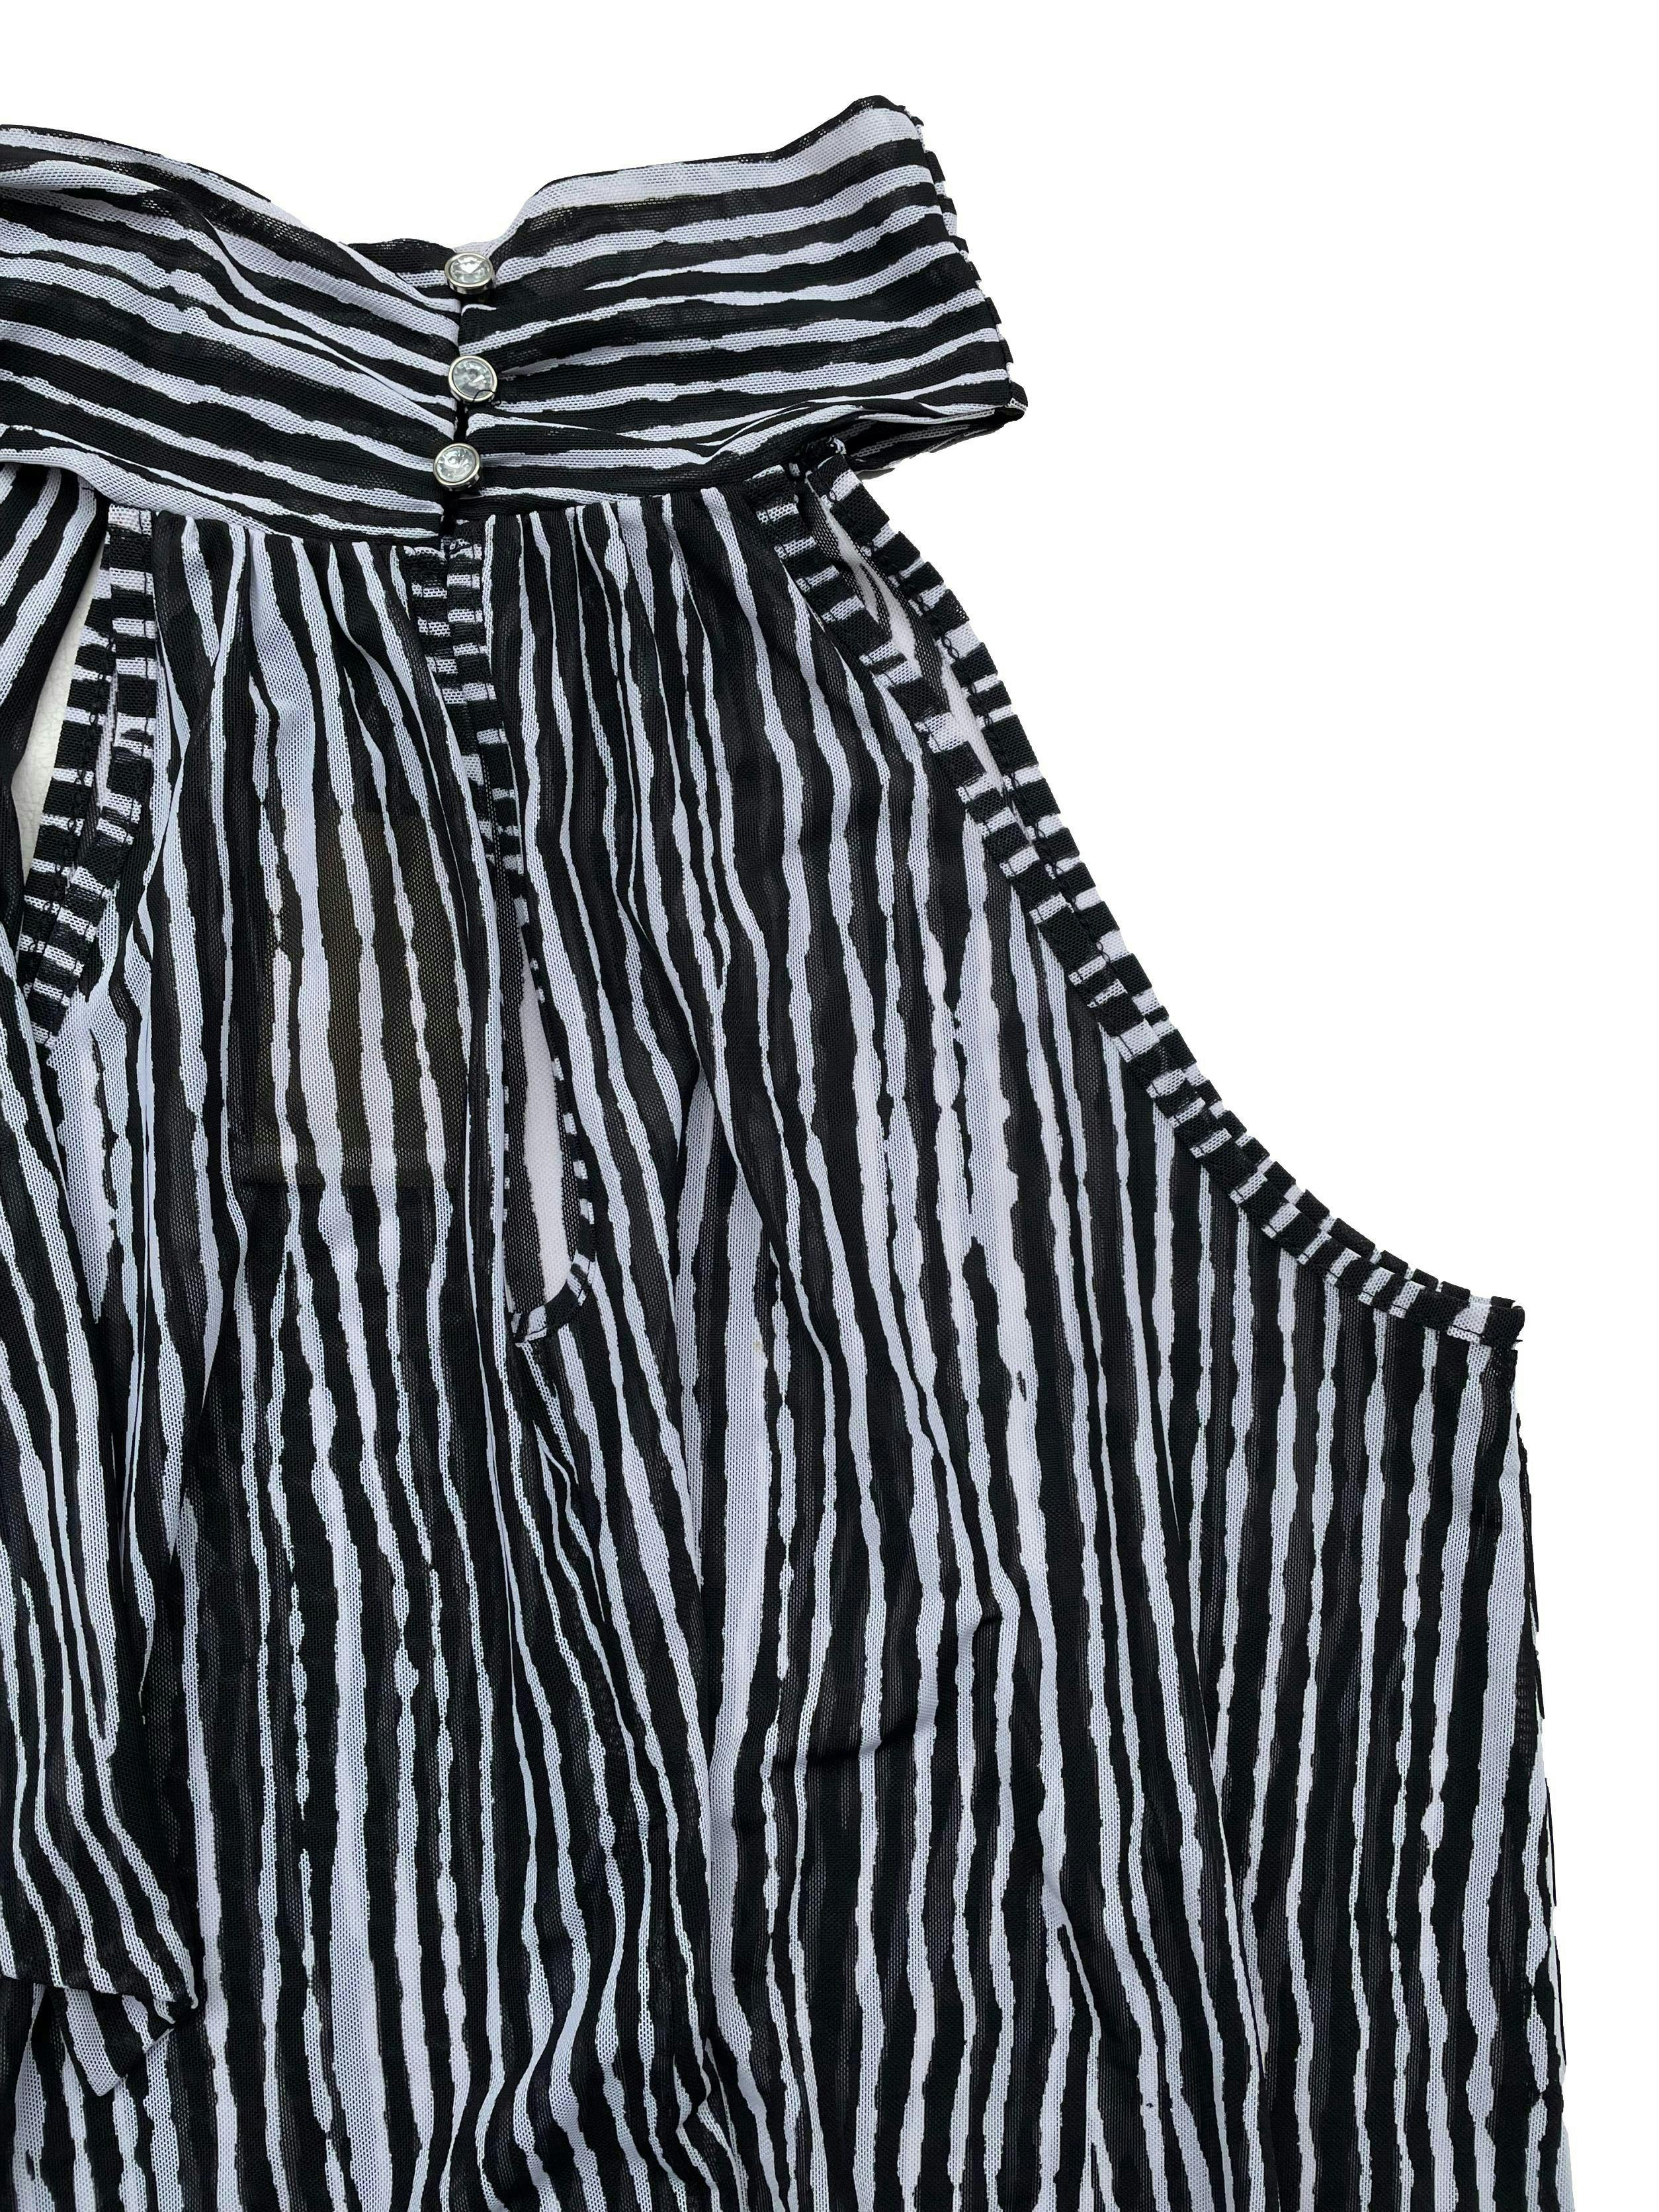 Blusa de mesh con lineas en blanco y negro, cuello halter para anudar con botones y abertura en espalda, basta elasticada. Busto 96cm, Largo 60cm.